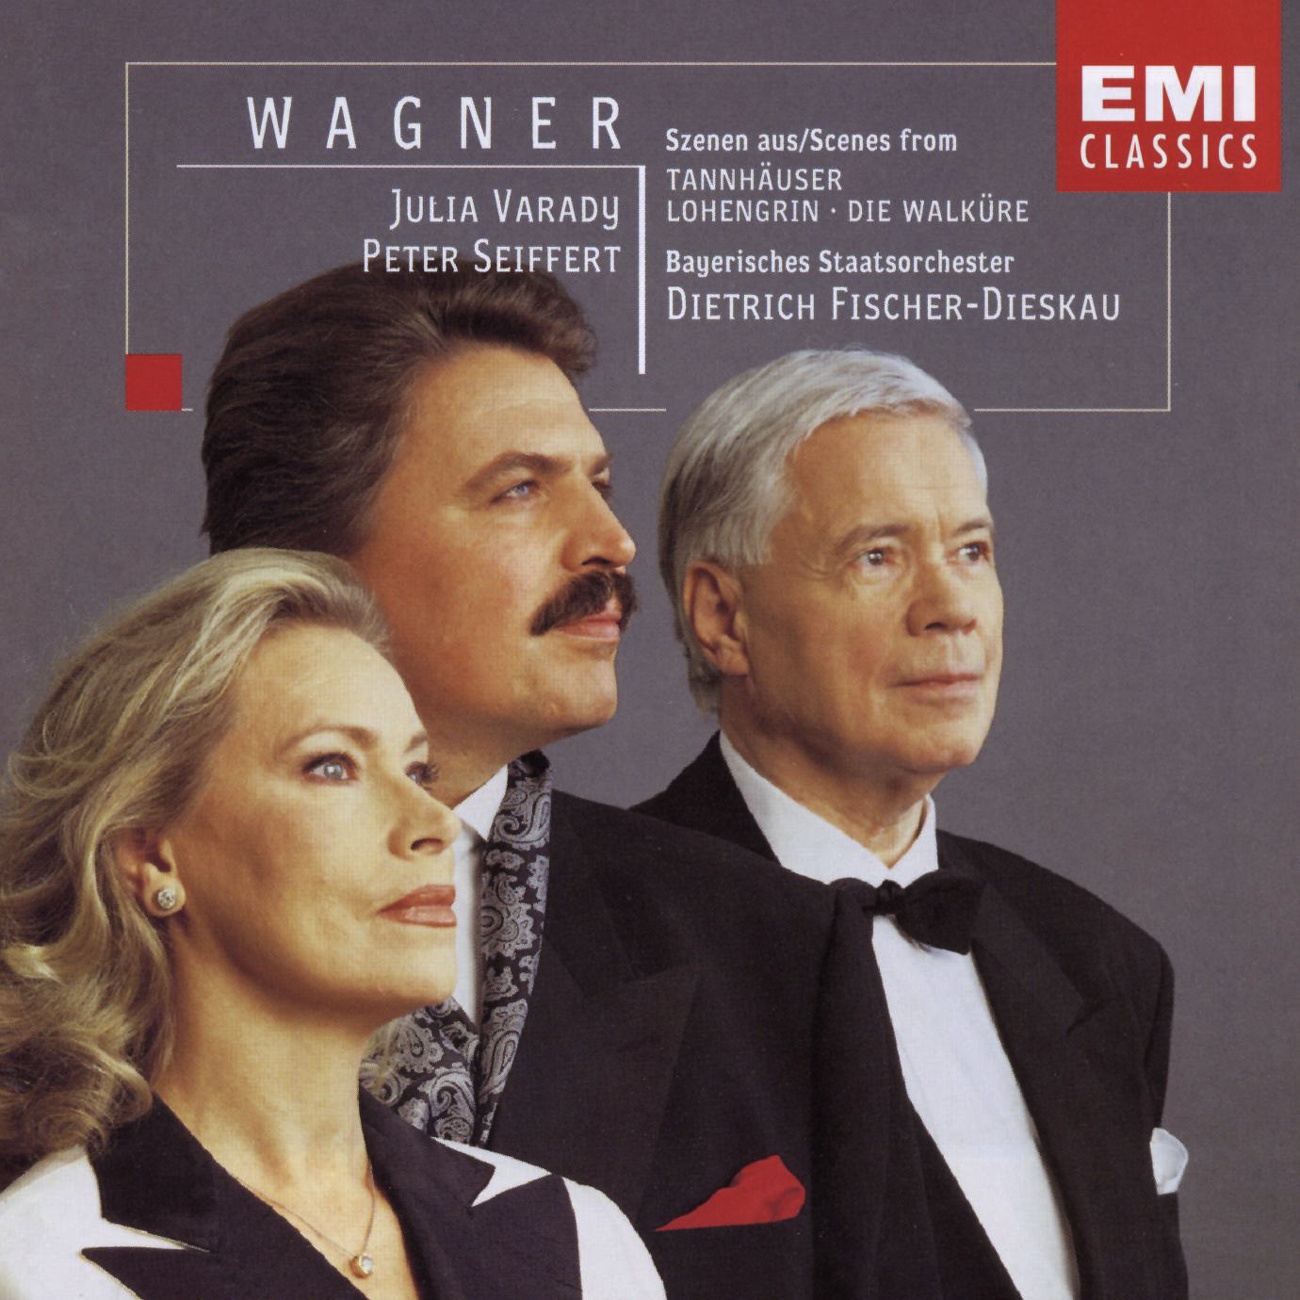 WagnerSzenen, Die Walkü re  Oper in 3 Aufzü gen, Erster Aufzug:  Siegmund hei' ich und Siegmund bin ich! Siegmund  Sieglinde